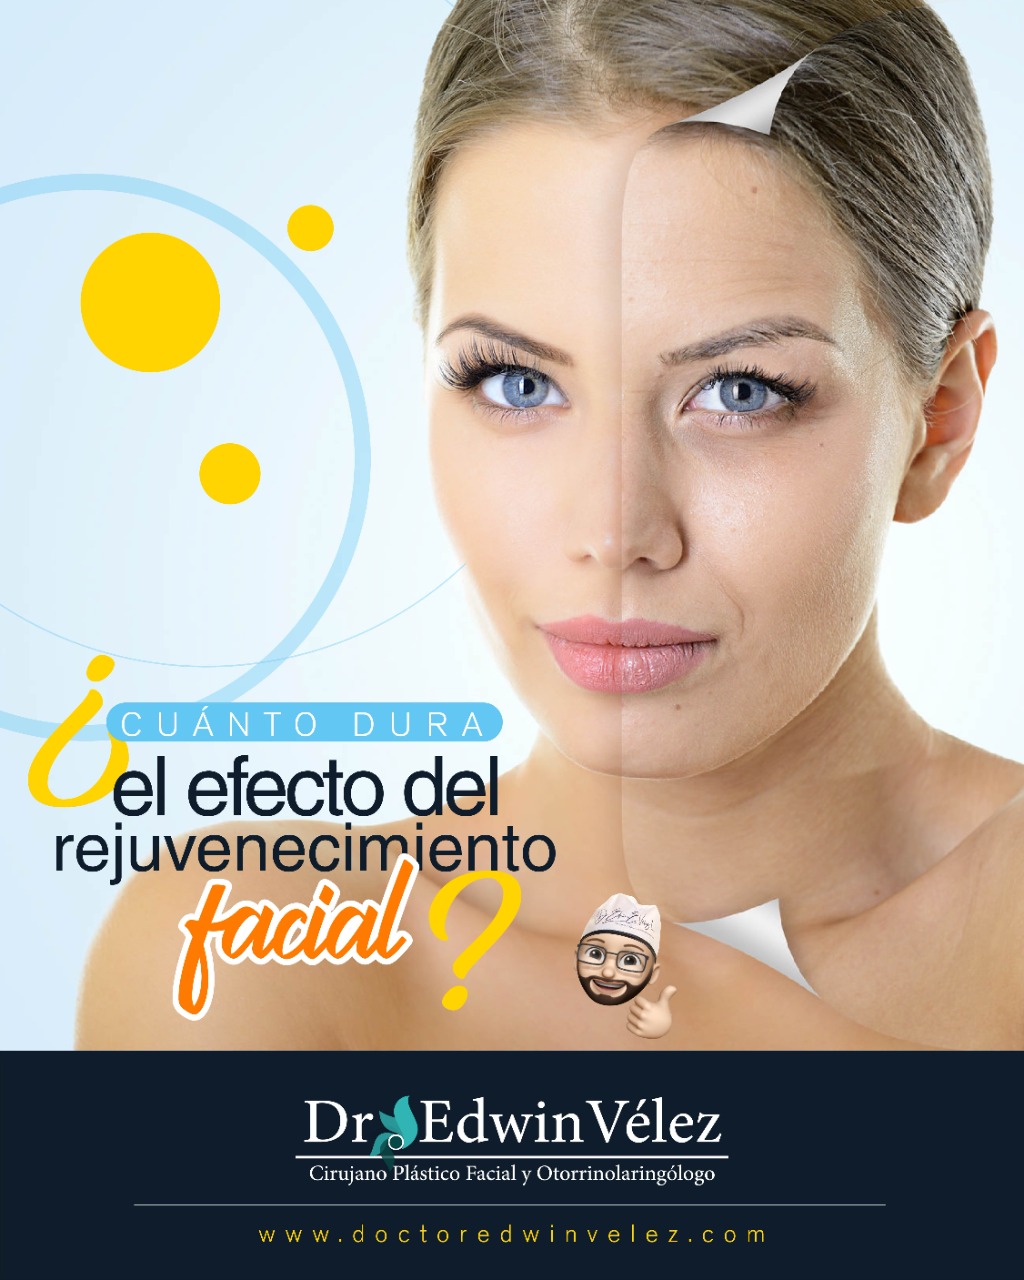 Afectar sensor fondo Cuánto dura el efecto del rejuvenecimiento facial? - Doctor Edwin Vélez